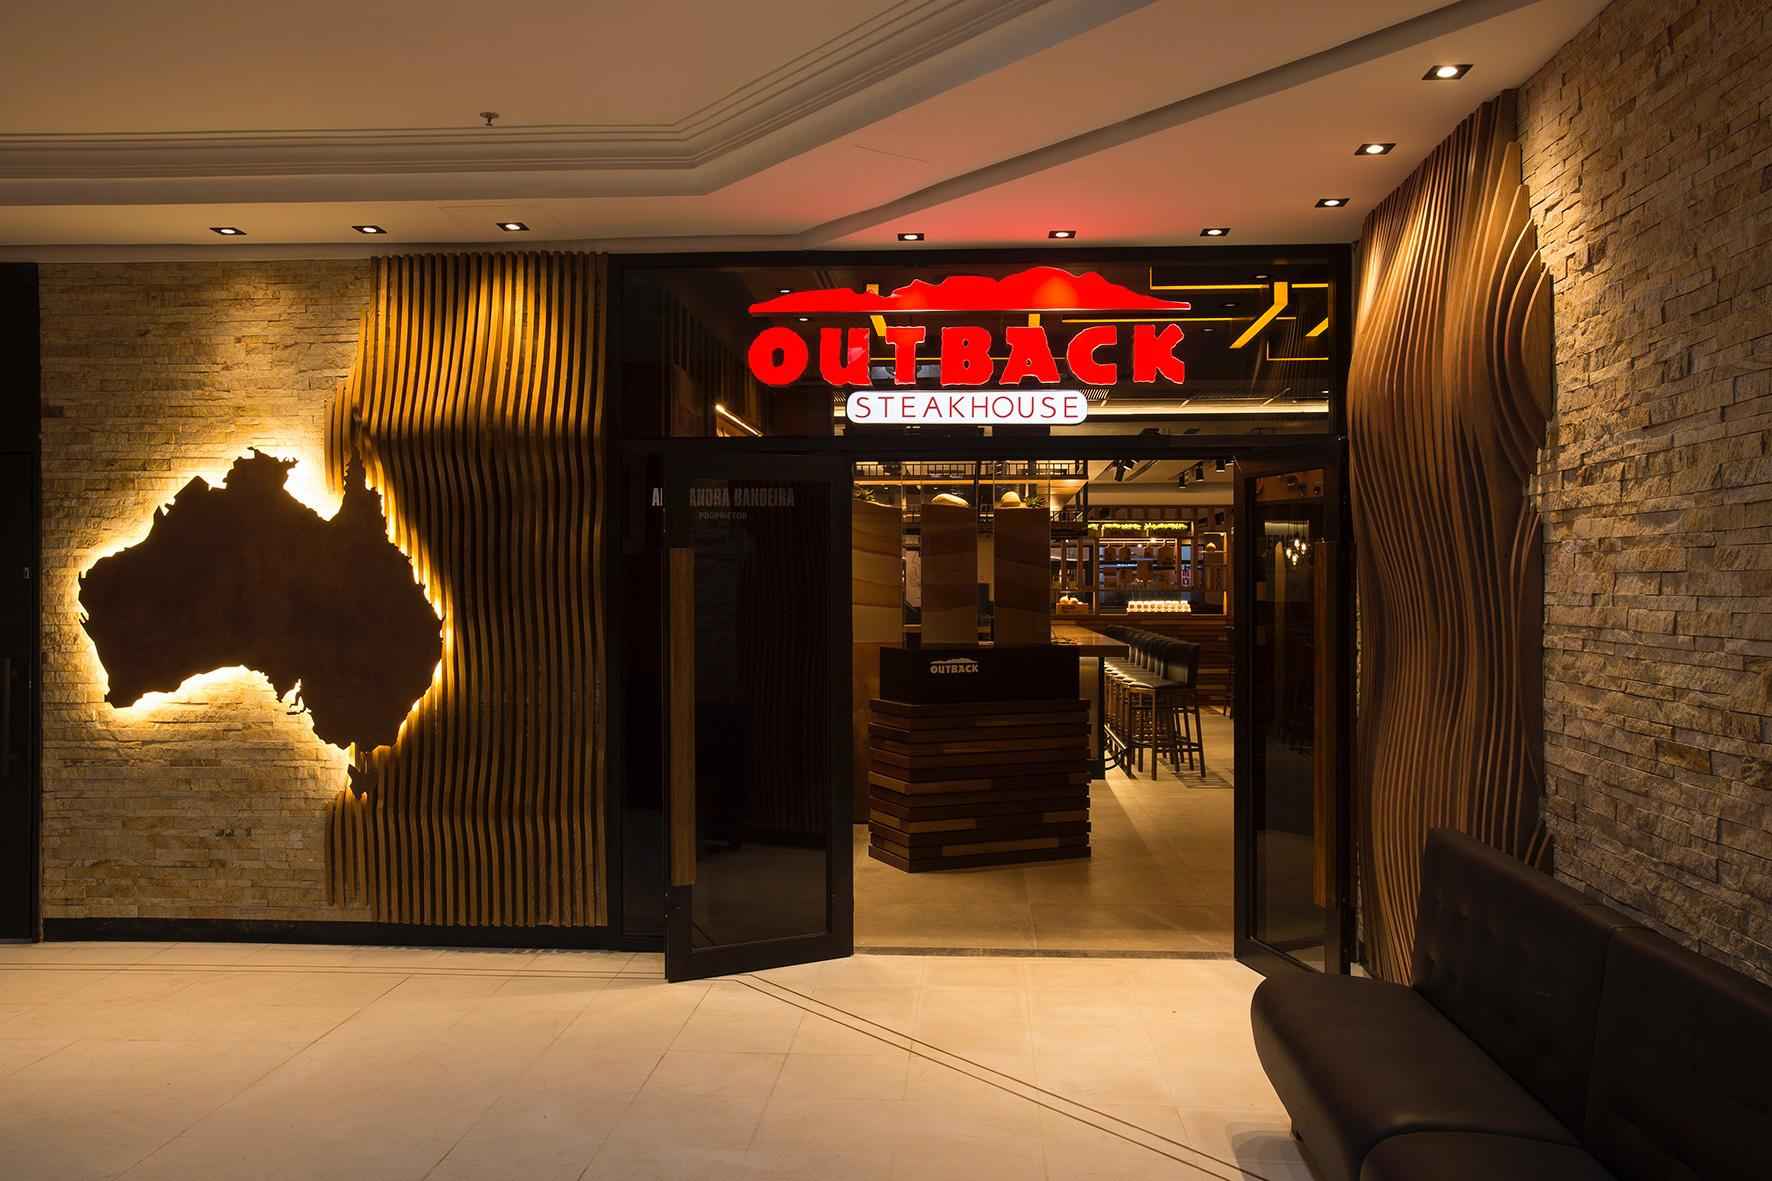 Outback Steakhouse planeja investir R$ 80 milhões em expansão no Brasil - Outback/Divulgação